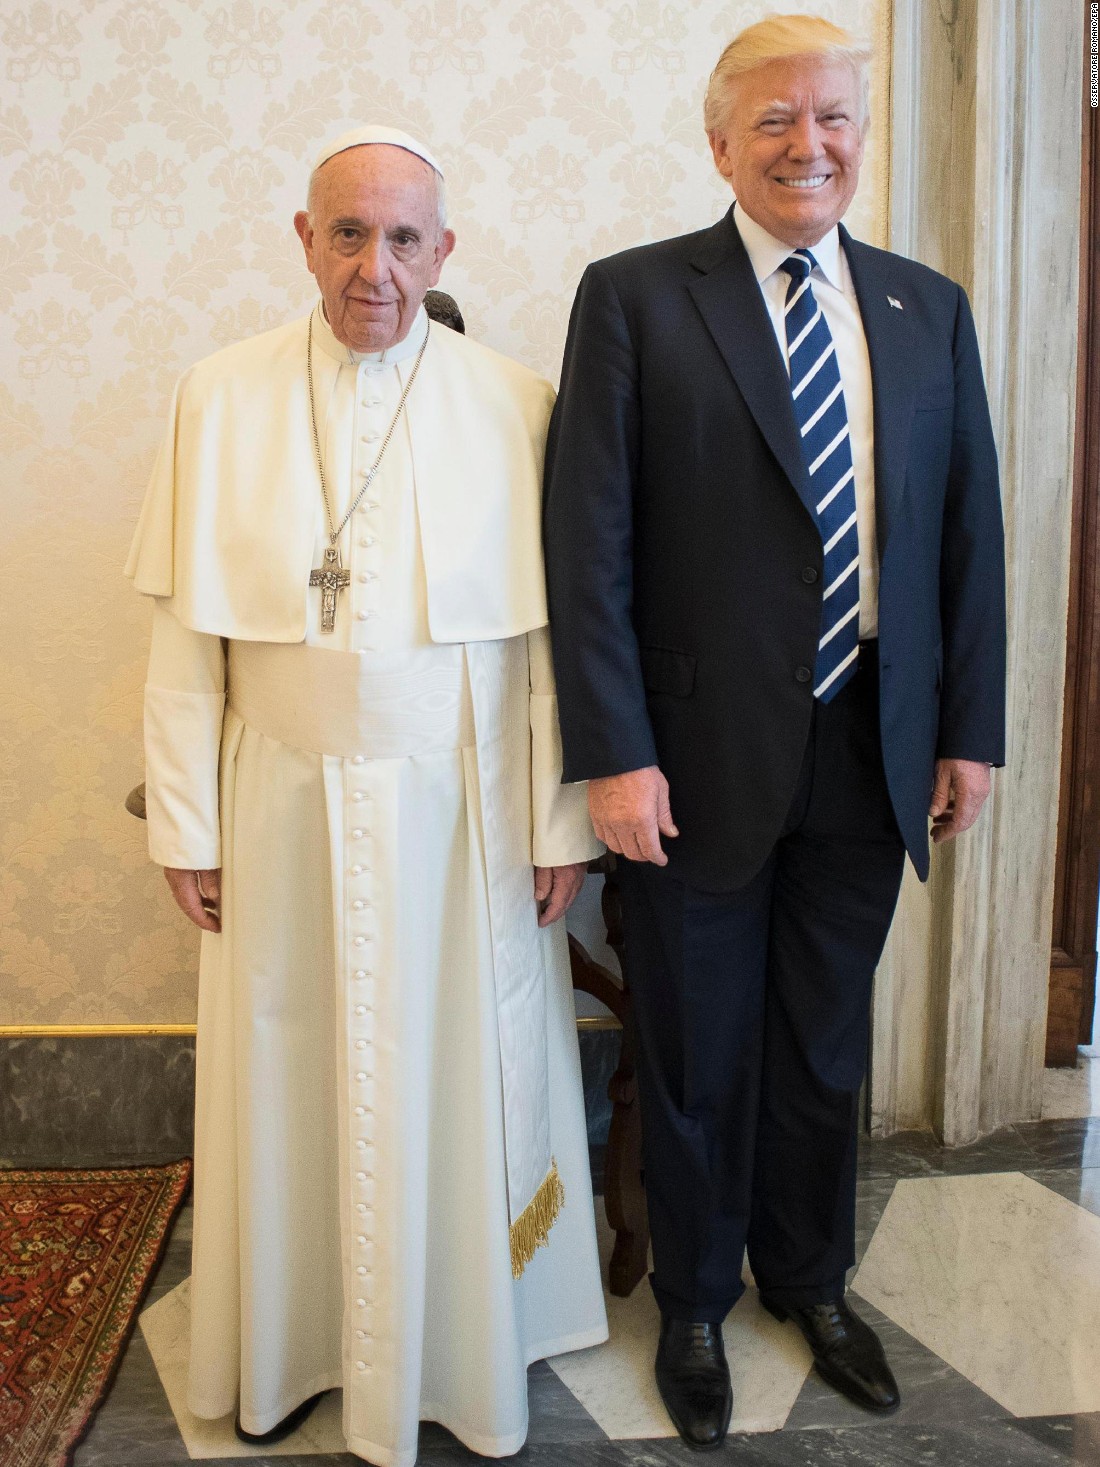 lovende patron Melankoli When the President met the Pope - CNN.com